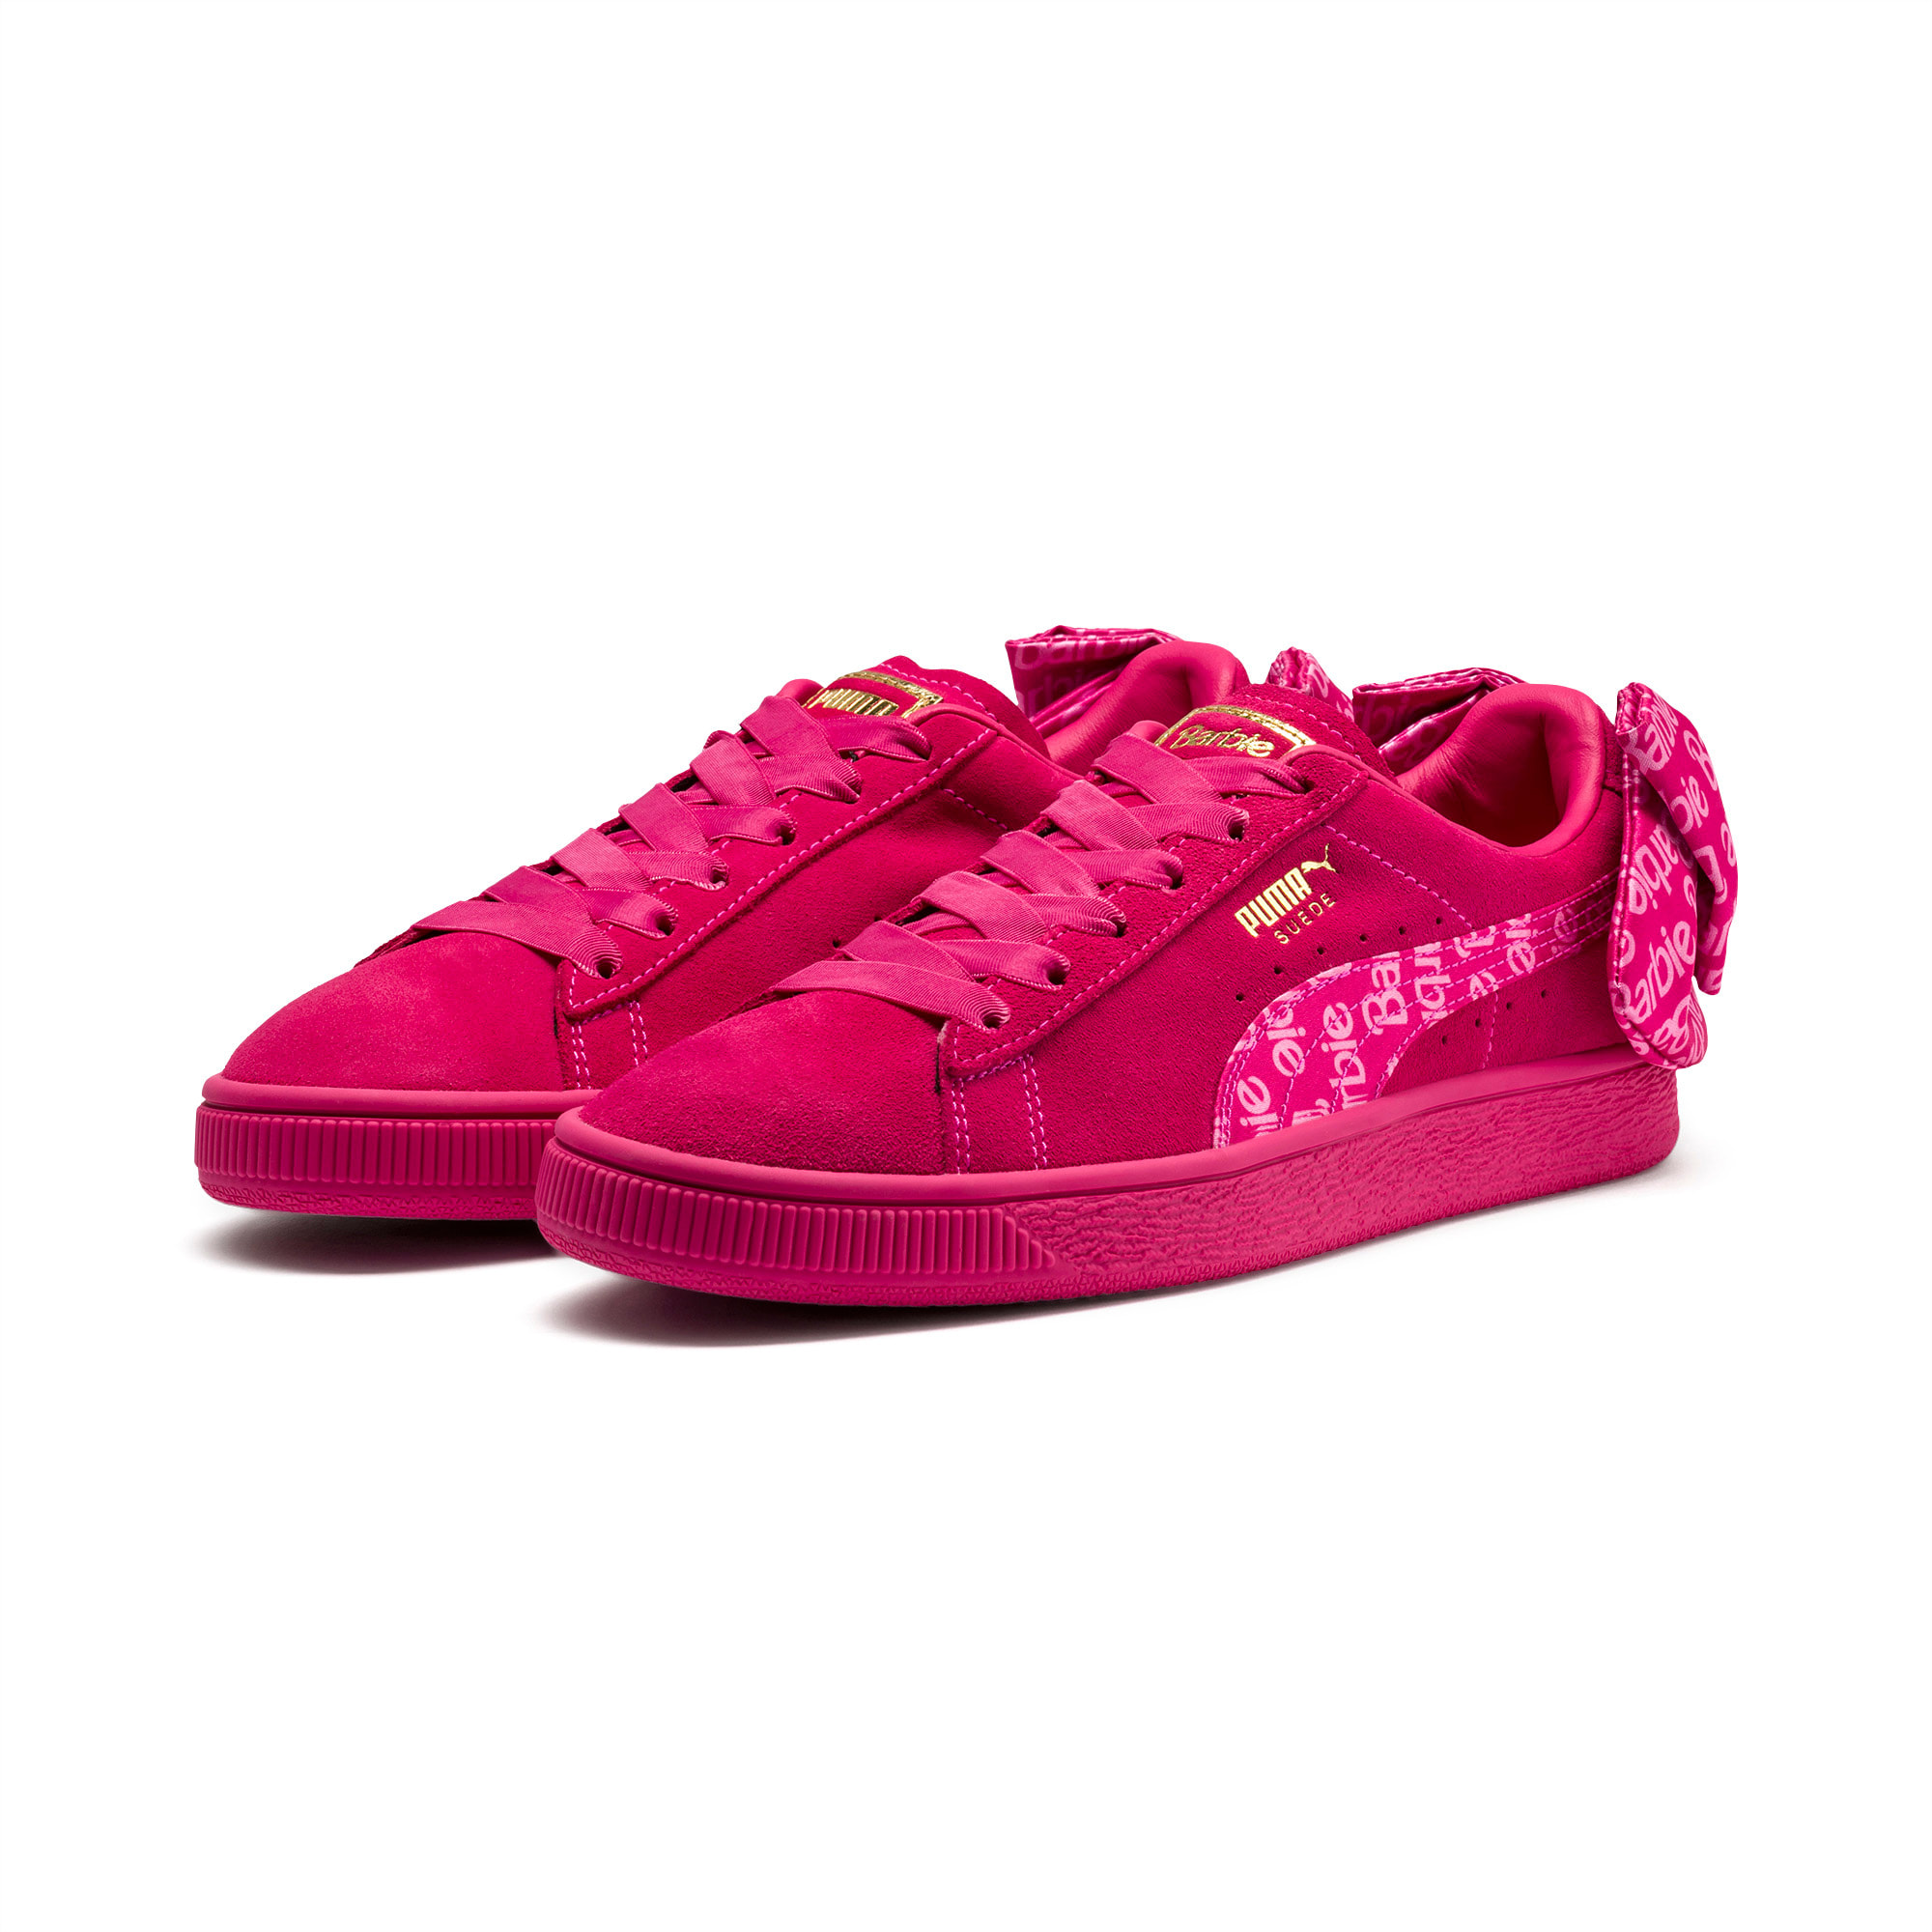 barbie x puma shoes